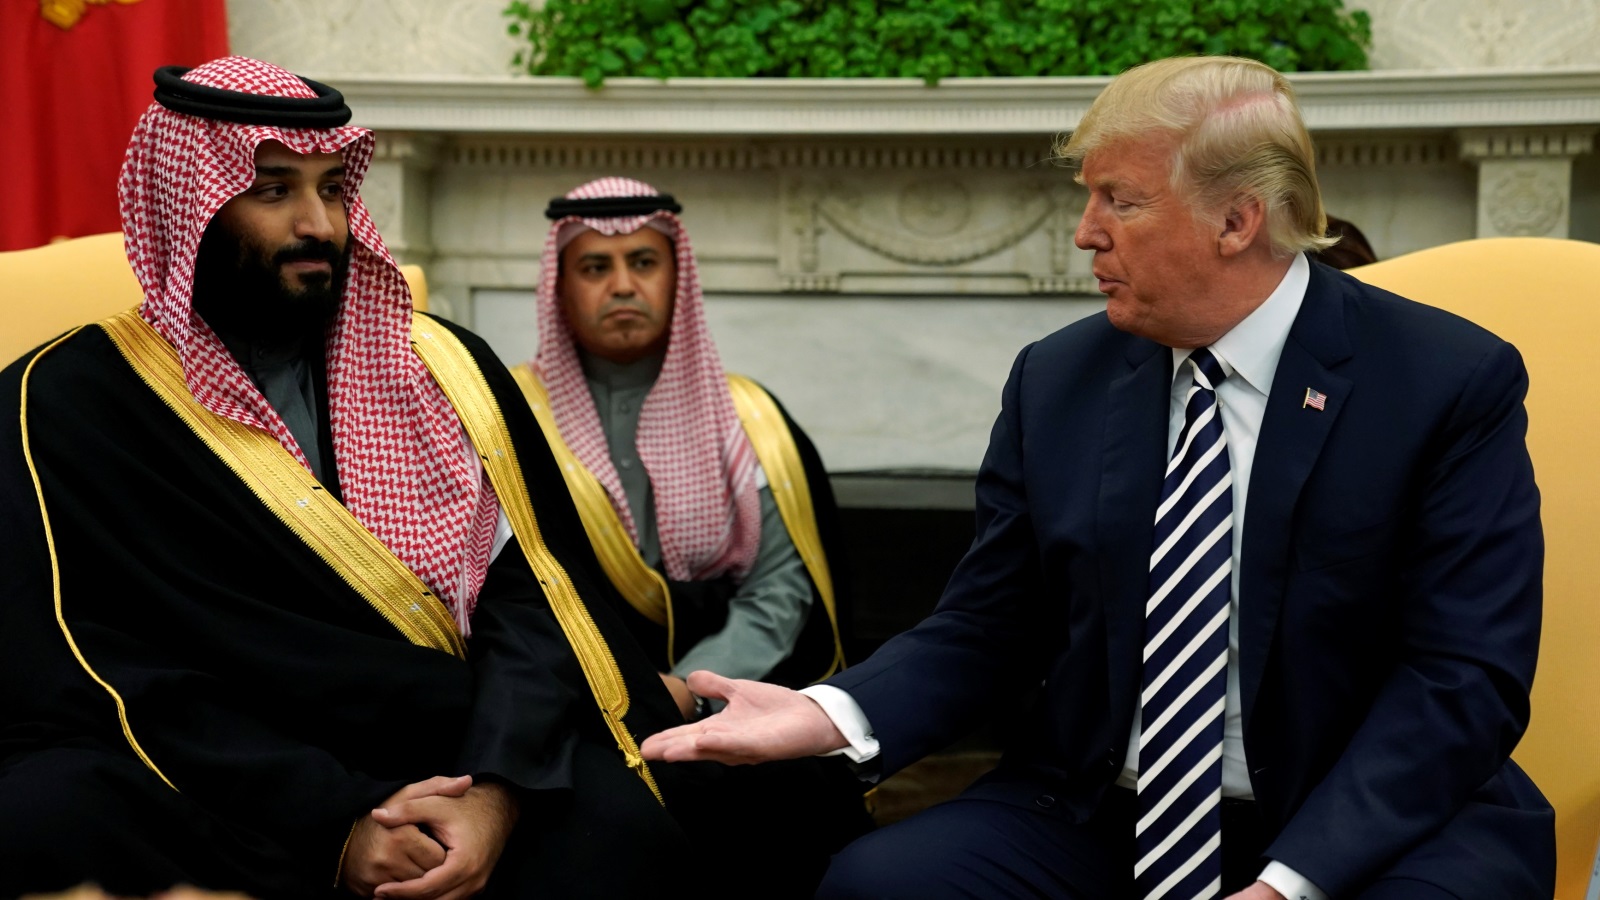 إلقاء السعودية نفسها في المستنقع الأمريكي الإسرائيلي سيزيد الضغوط عليها لإتباع سياسات هوجاء لا تخدم مصالحها بقدر ما تخدم مصالح أمريكا وإسرائيل وإيران